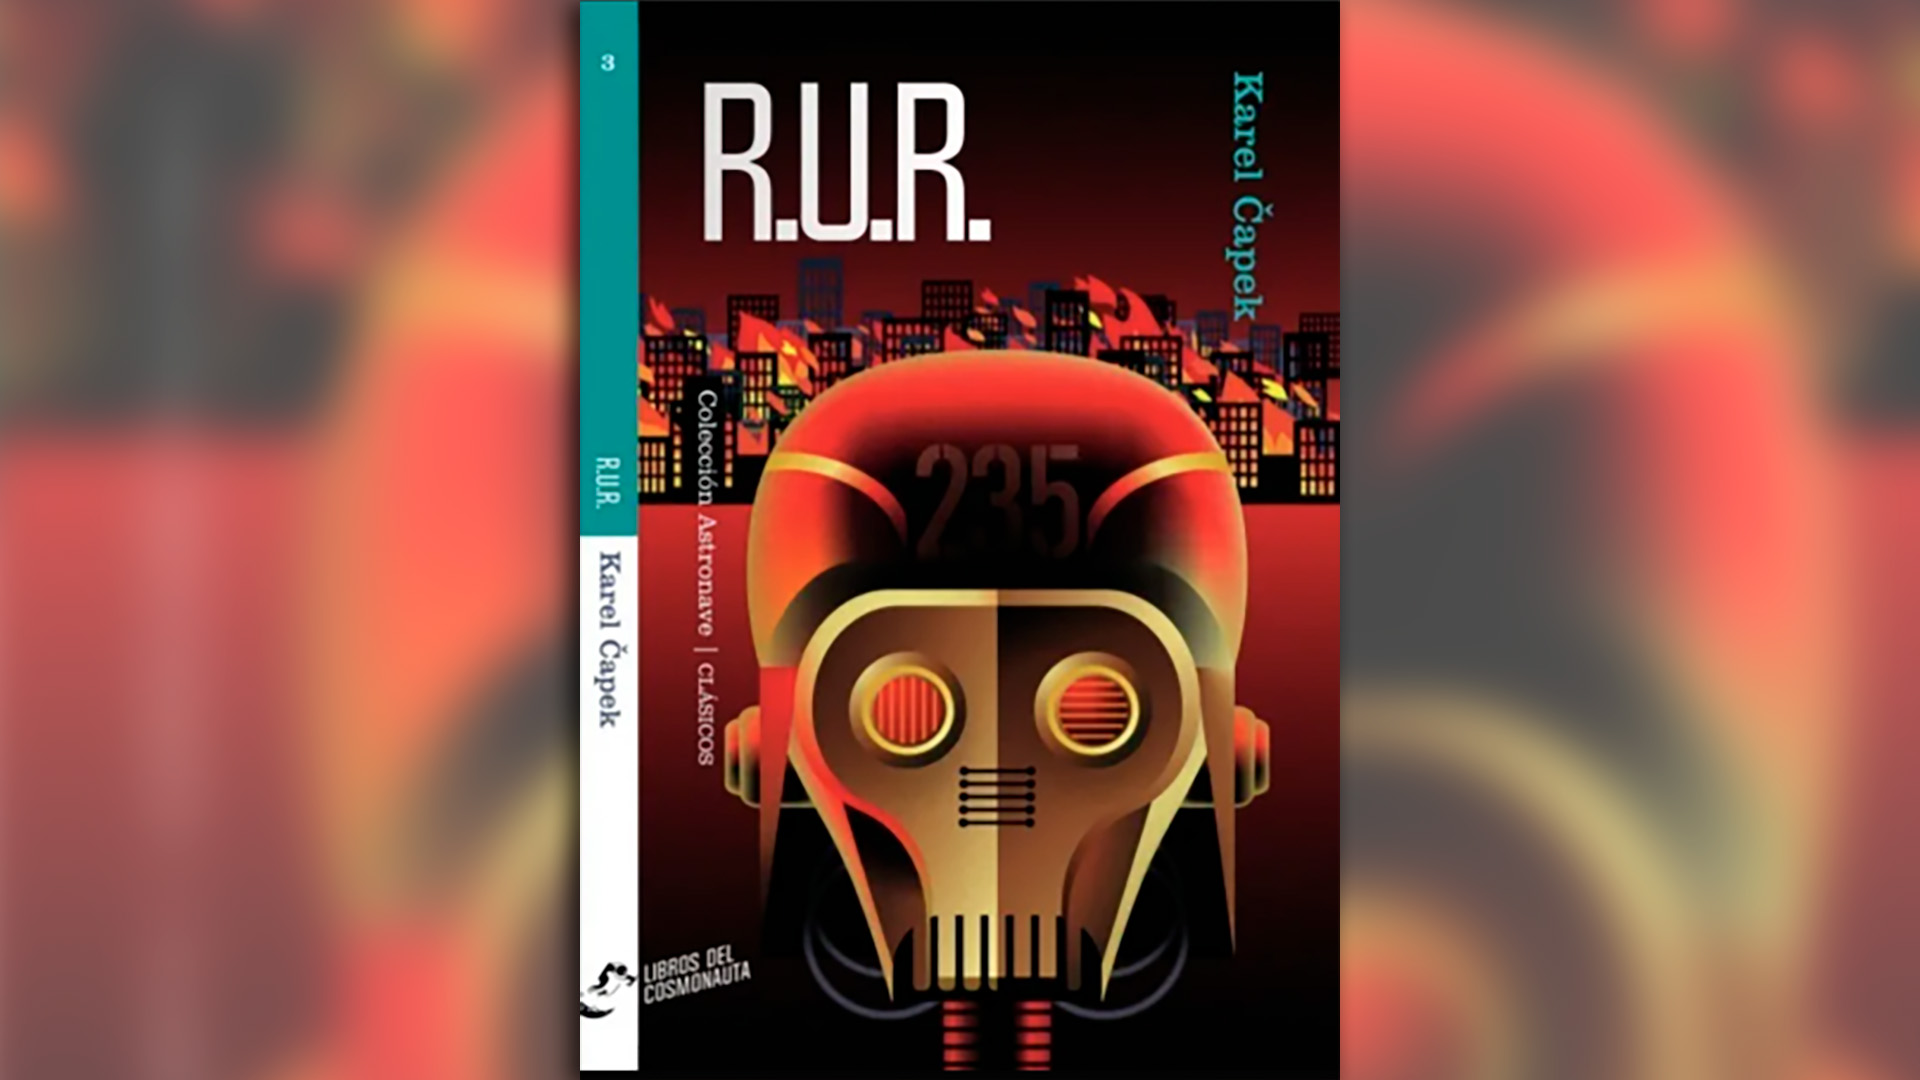 "R.U.R (Robots Universales Rossum), del checo Karel Čapek, editado por Libros del Cosmonauta